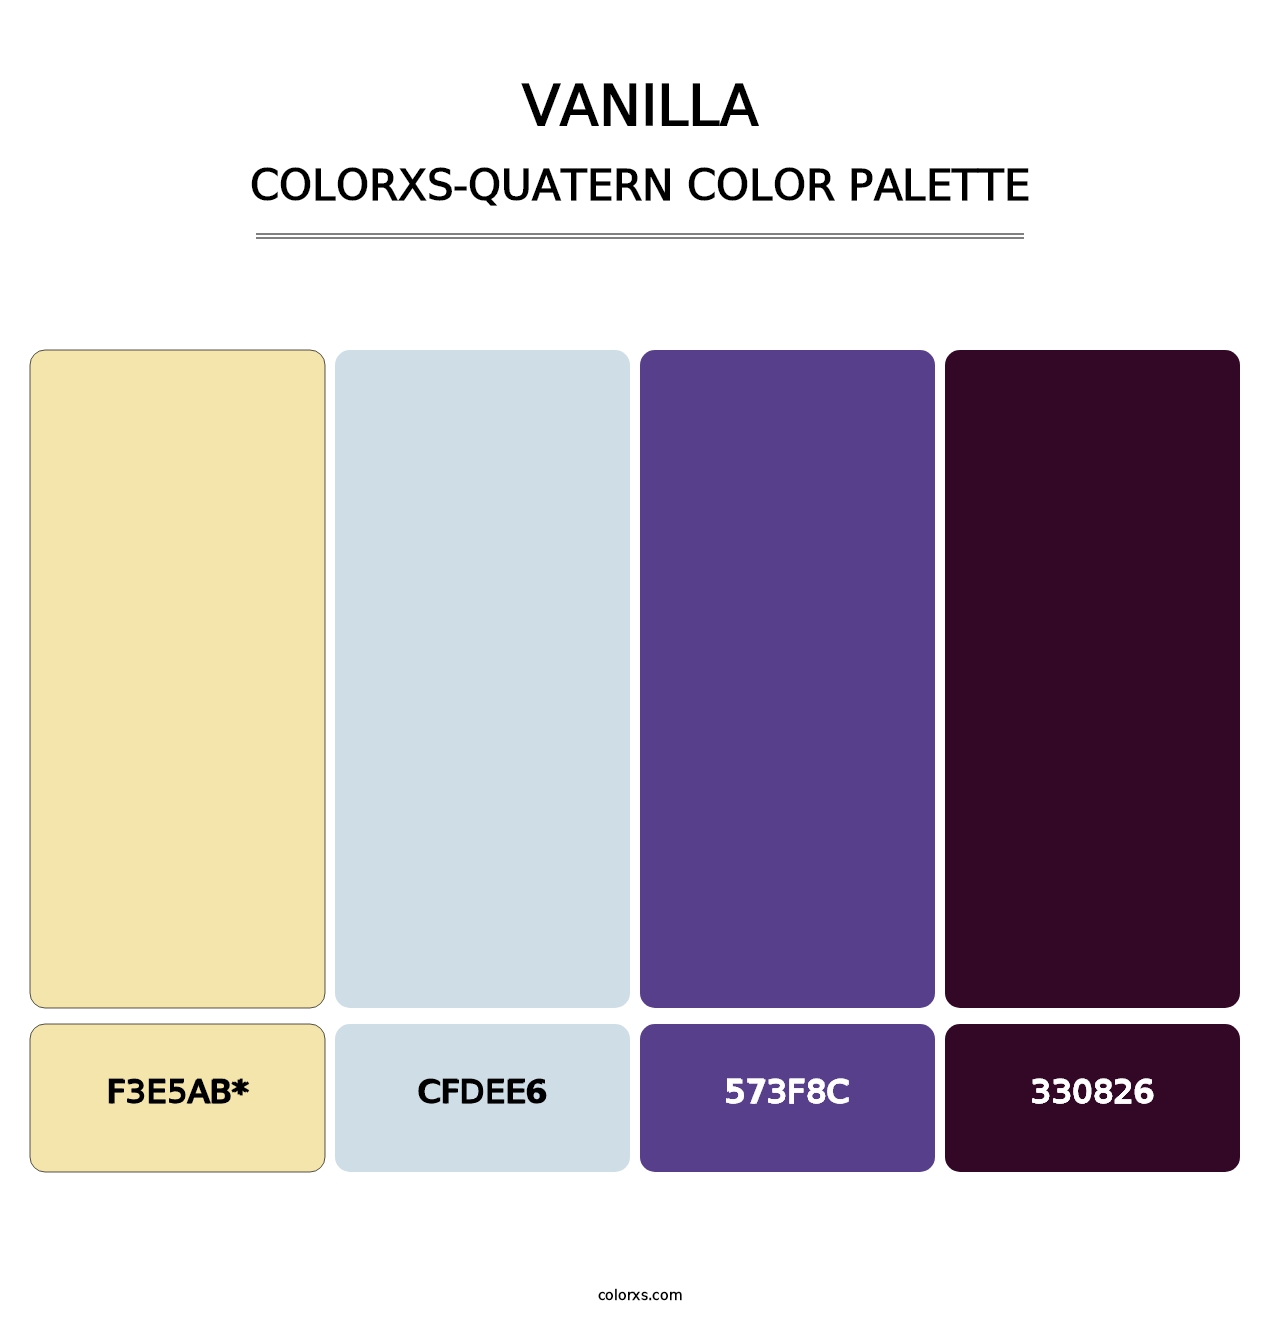 Vanilla - Colorxs Quatern Palette